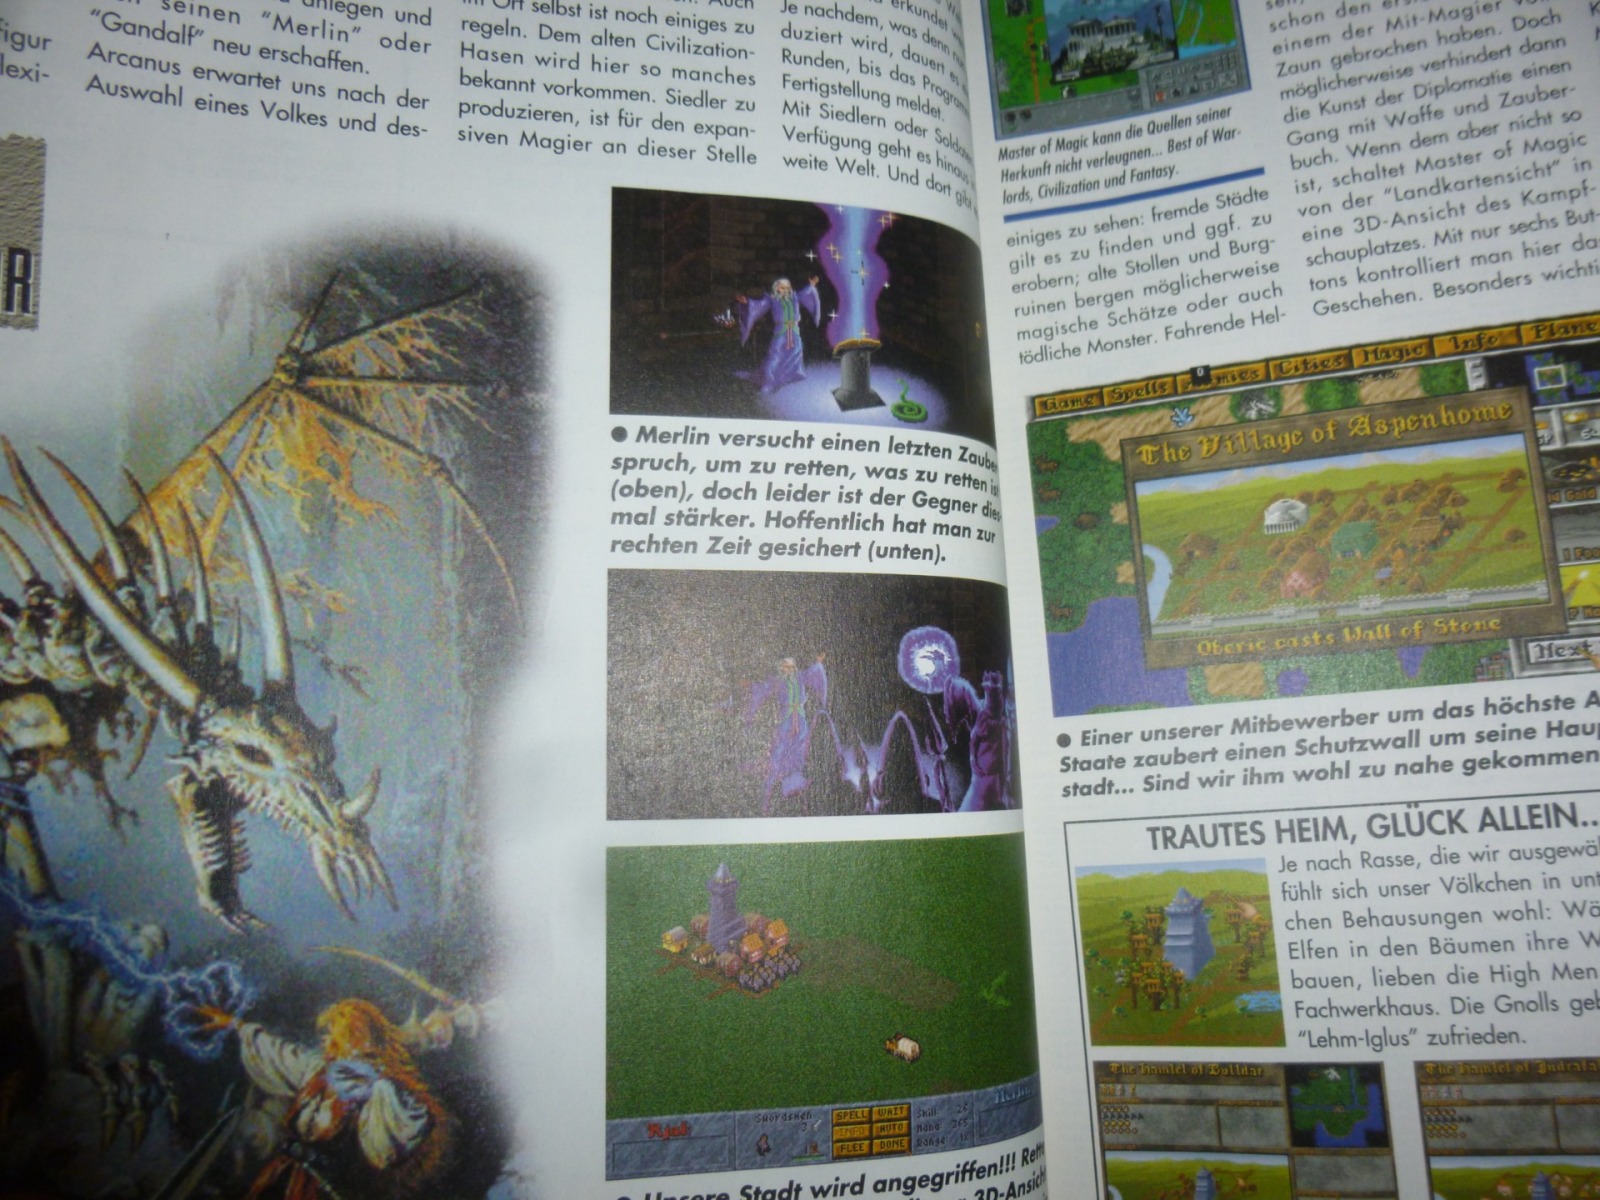 Play Time - Das Computer- und Videospiele-Magazin - Ausgabe 12/94 1994 11